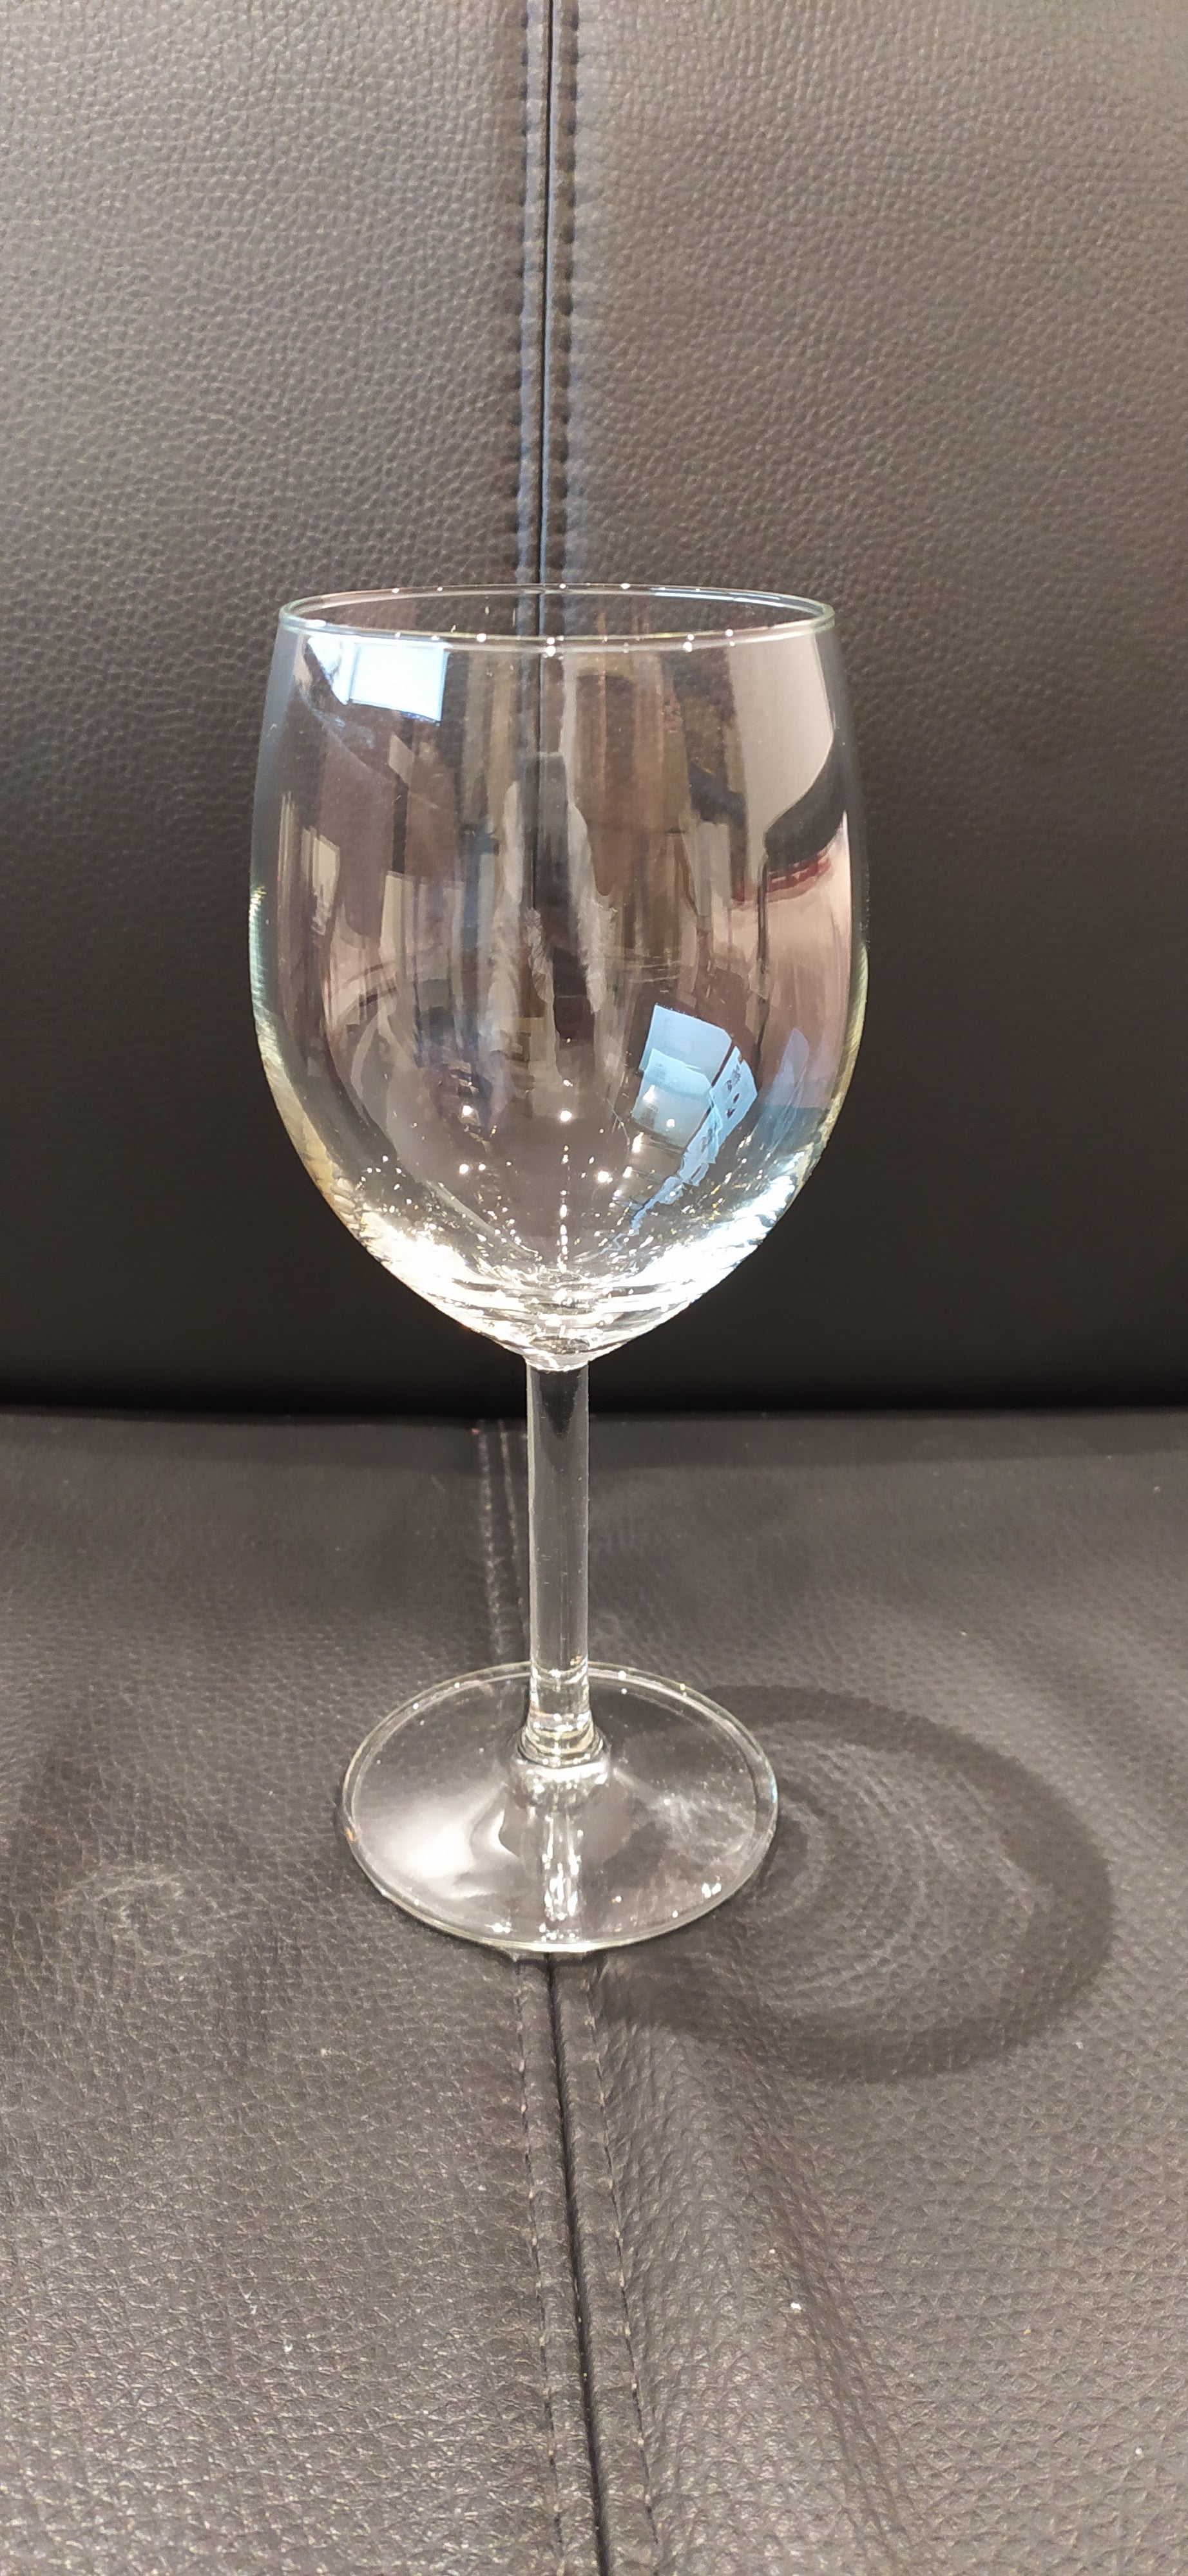 SVALKA Wine glass - clear glass 15 oz